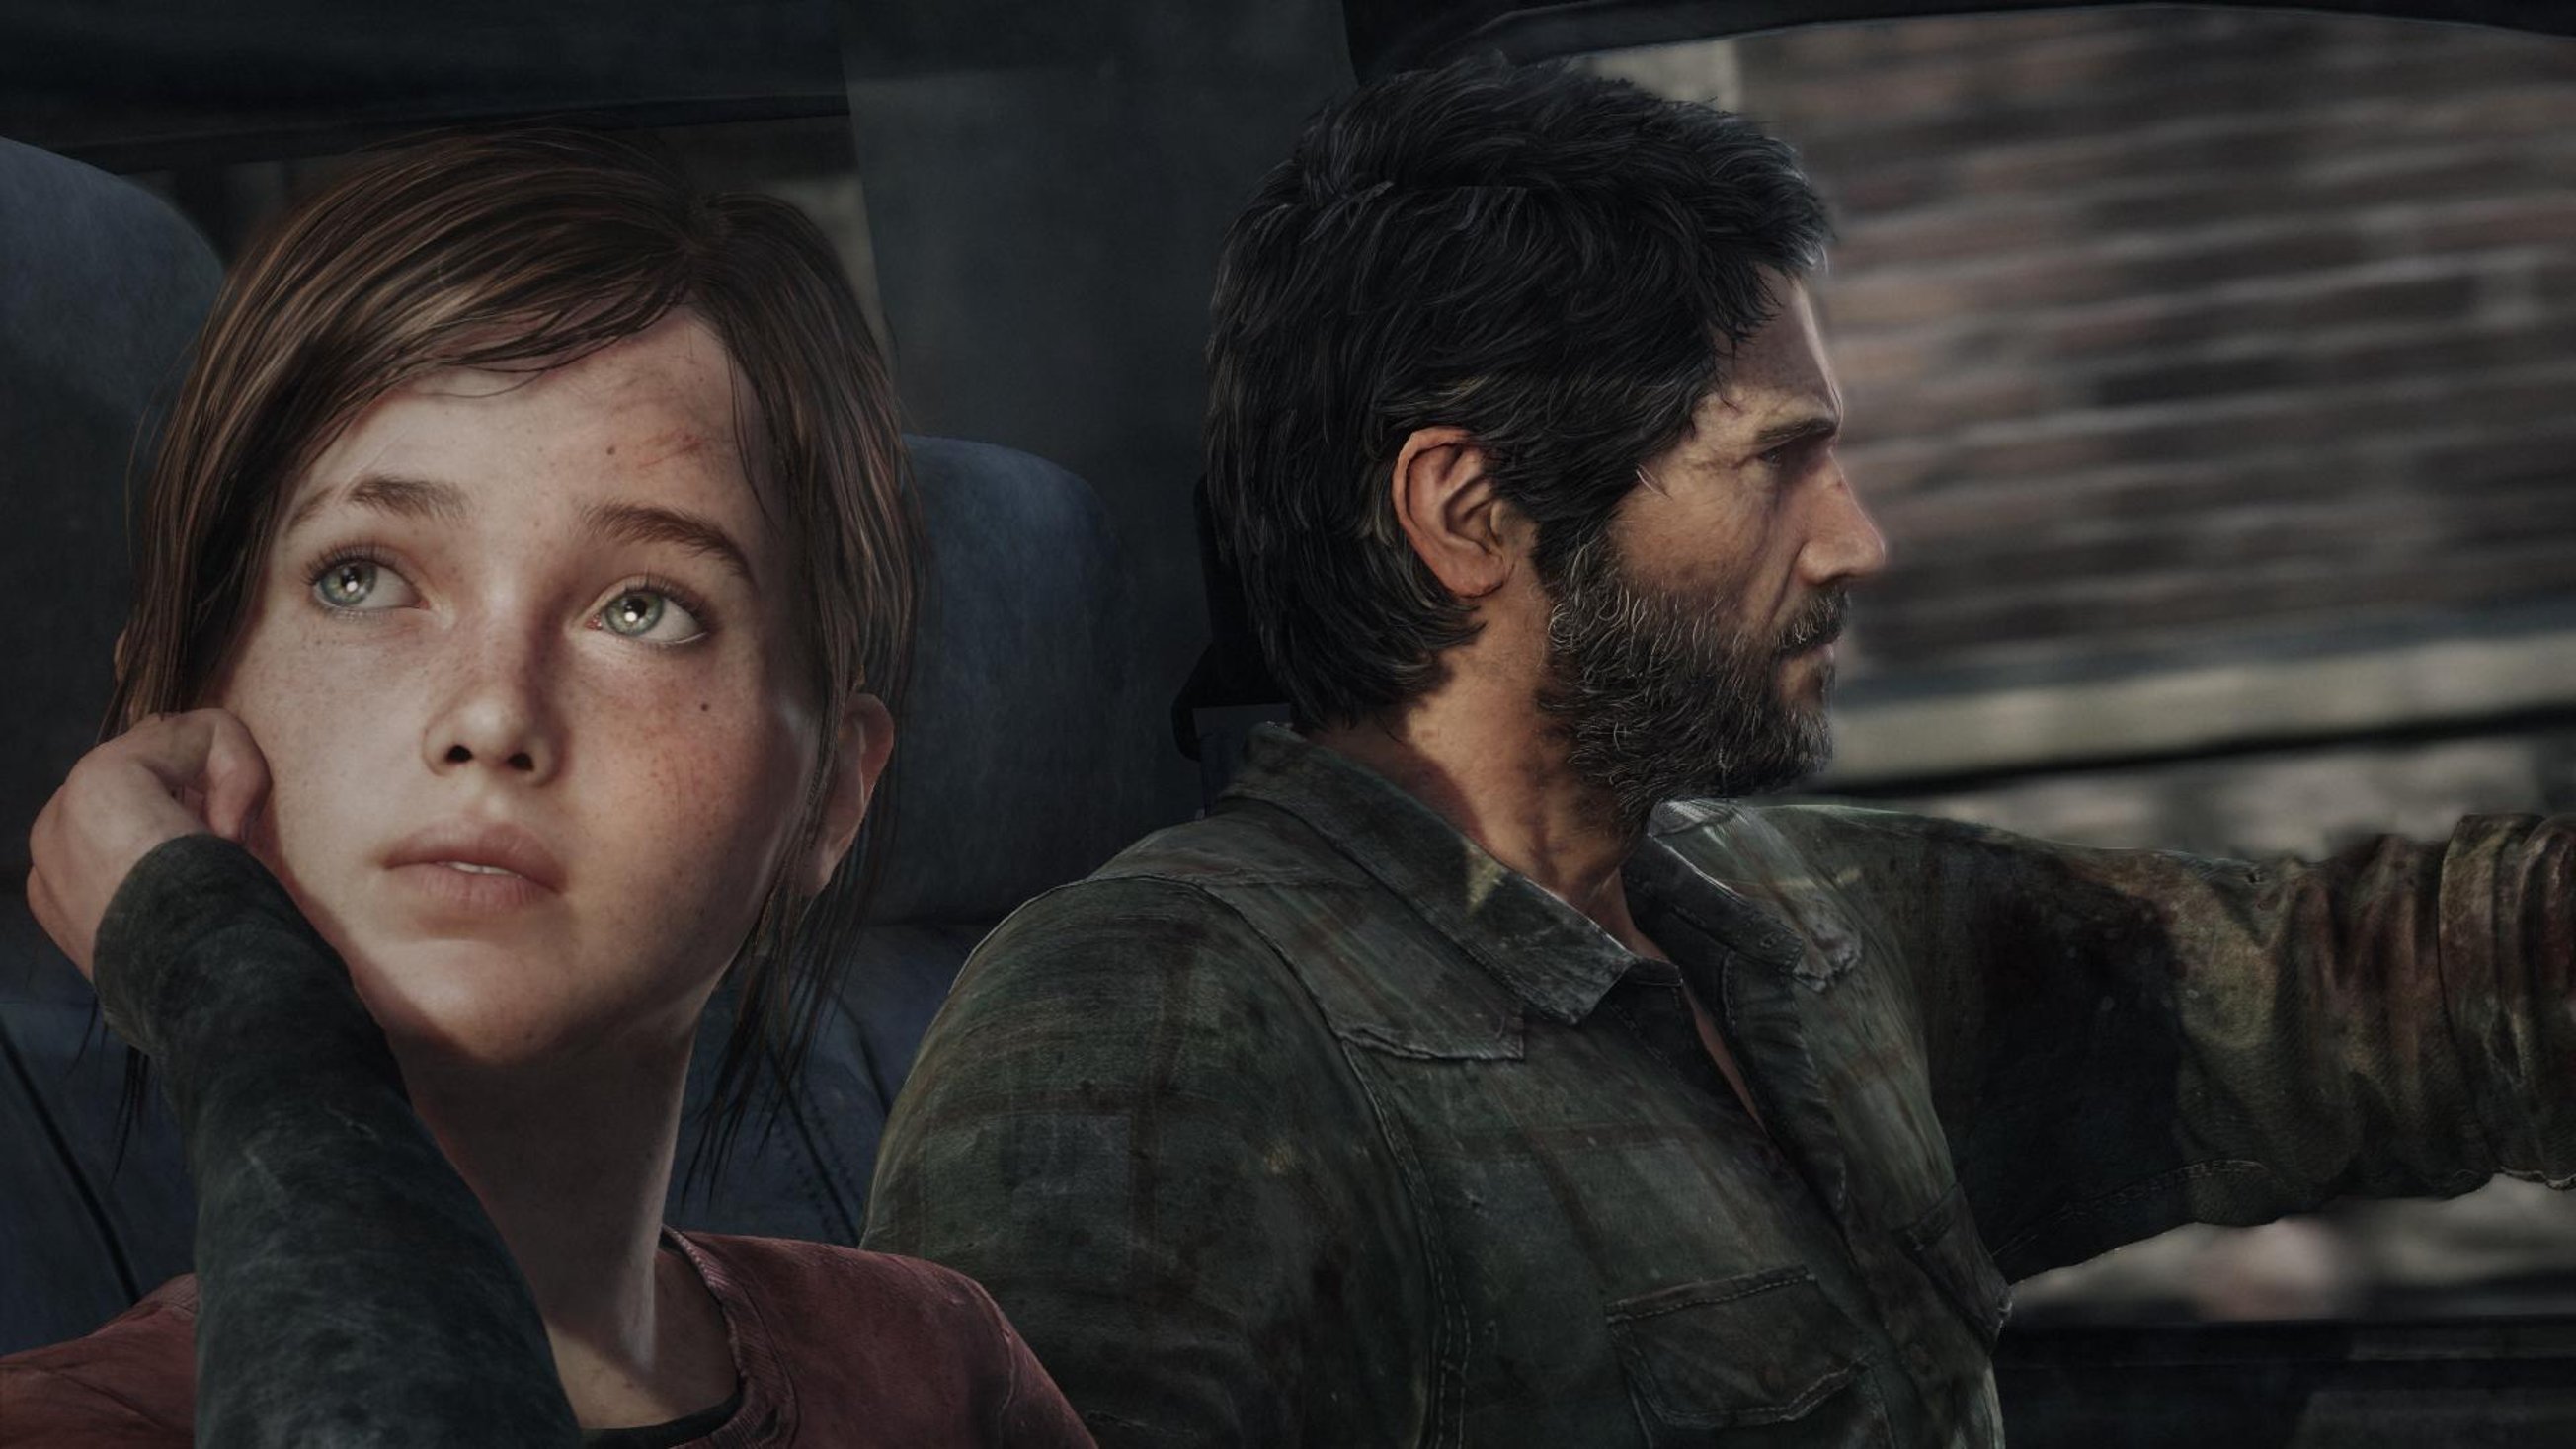 Тираж Uncharted 4 превысил 16 миллионов копий, а The Last of Us — 20 миллионов